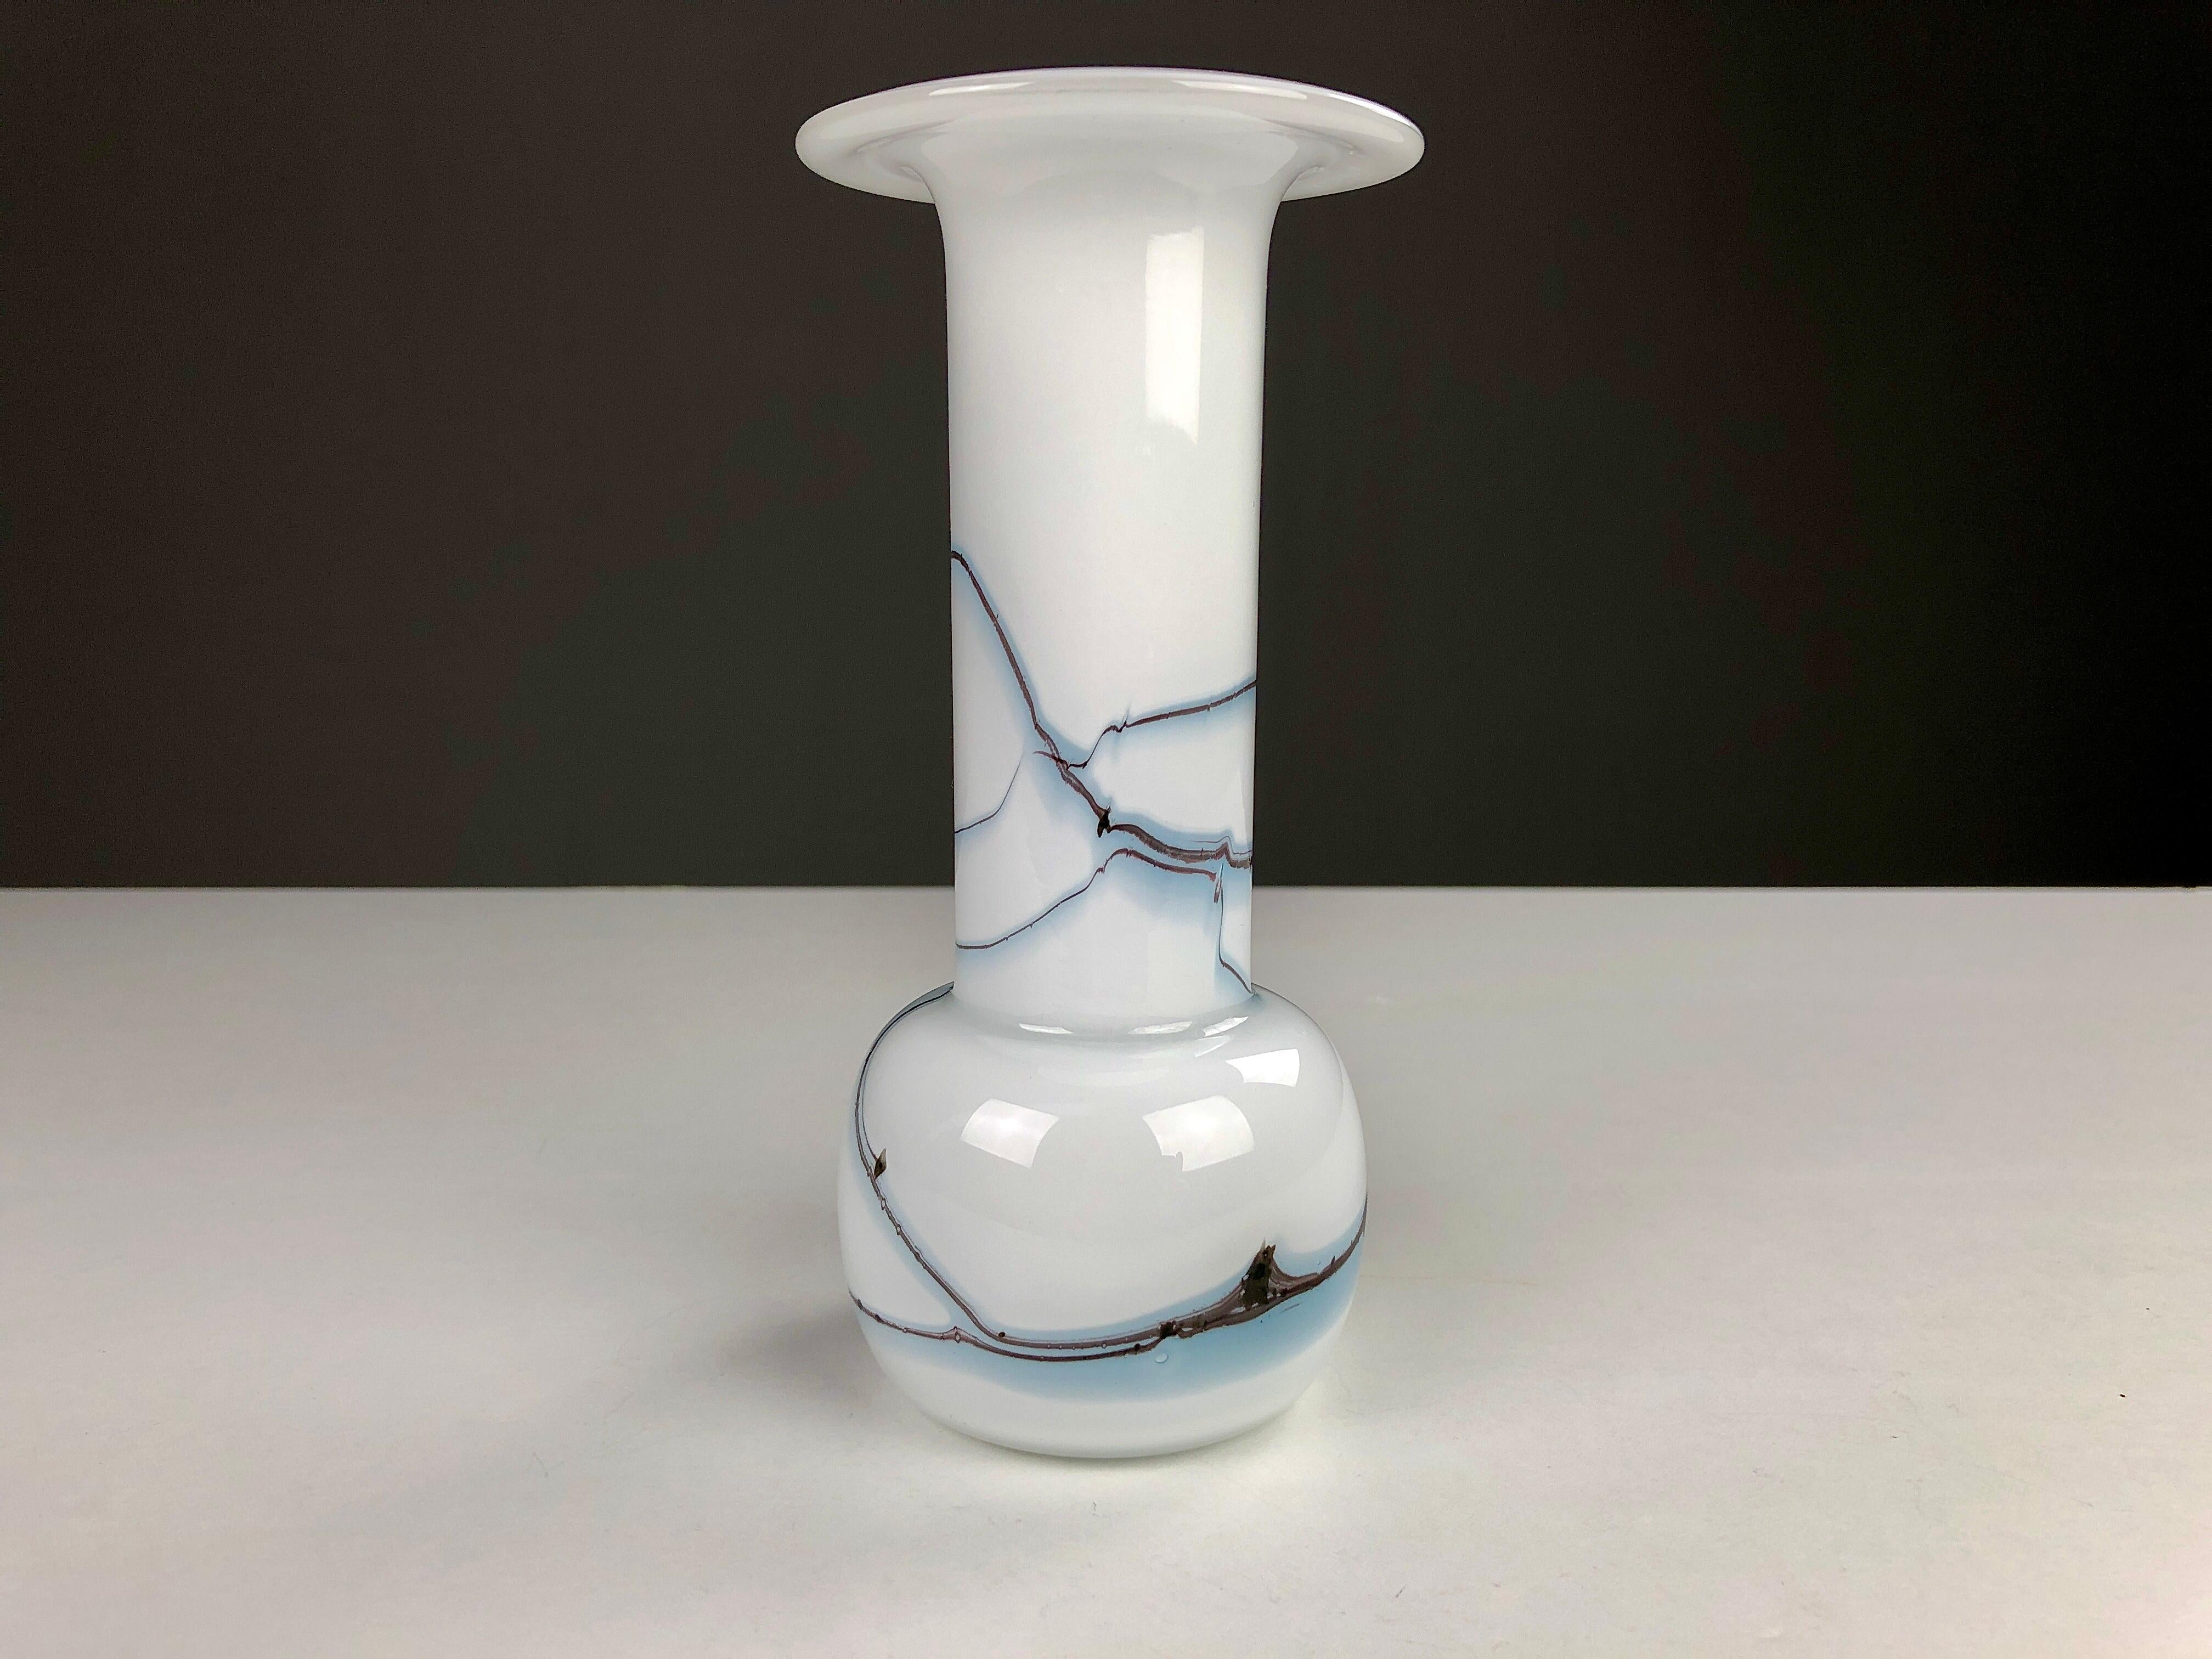 Vase / bougeoir danois en verre d'art blanc, noir et bleu de Michael Bang produit par Holmegaard dans les années 1980.

Michael Bang (1942-2013) était le fils de Jacob E. Bang, le premier designer d'Holmegaard. Dans les années 1960-1980, Michael